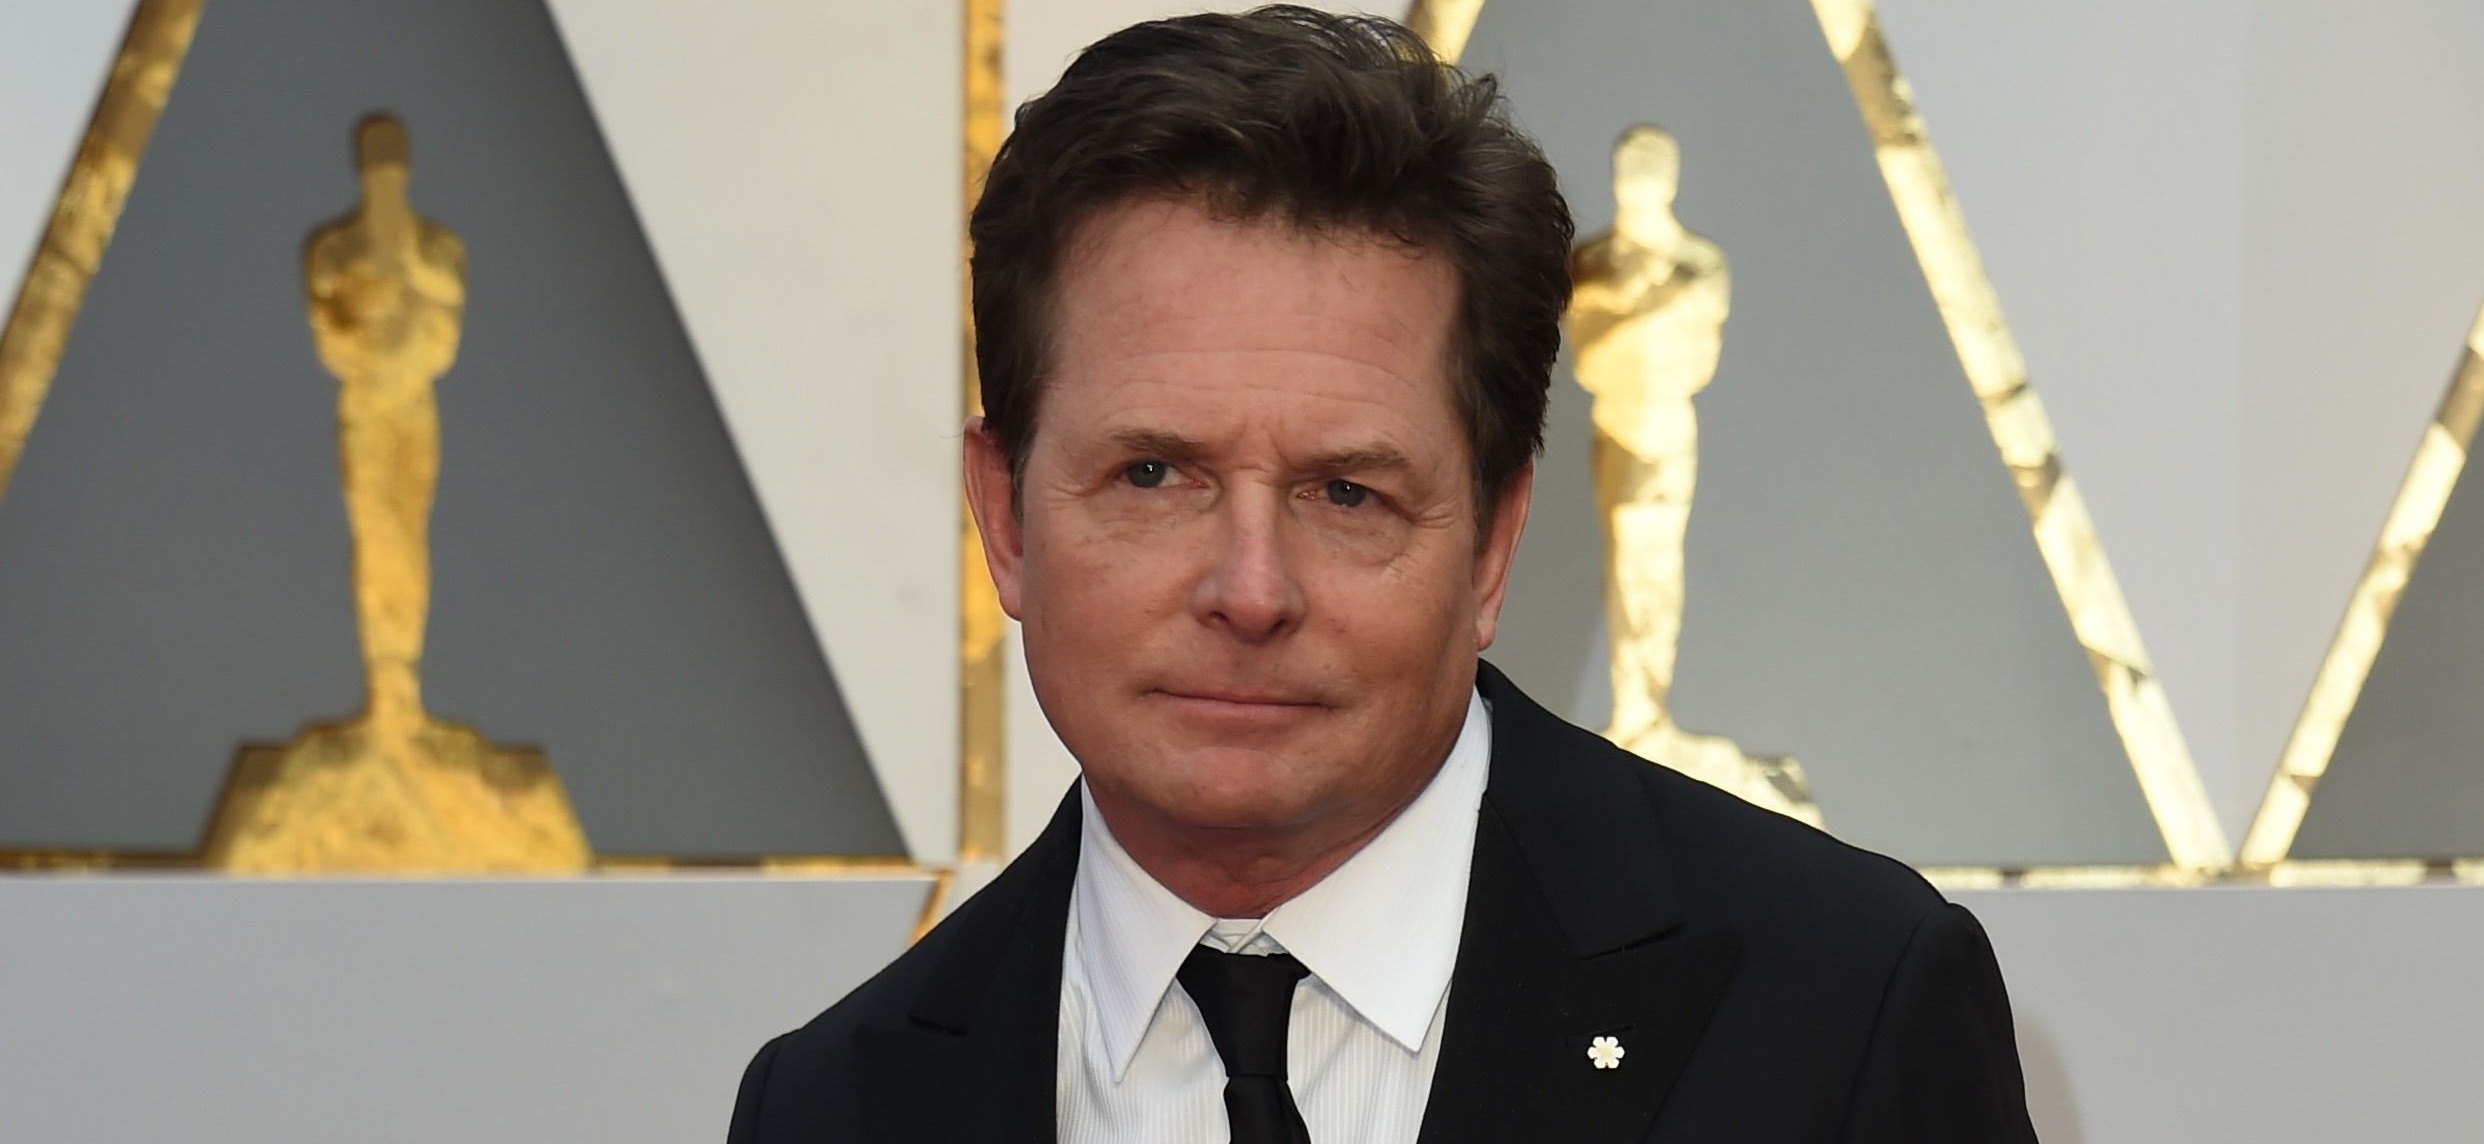 Michael J. Fox reveló el “momento más oscuro” de su vida: "Fue cuando cuestioné todo"